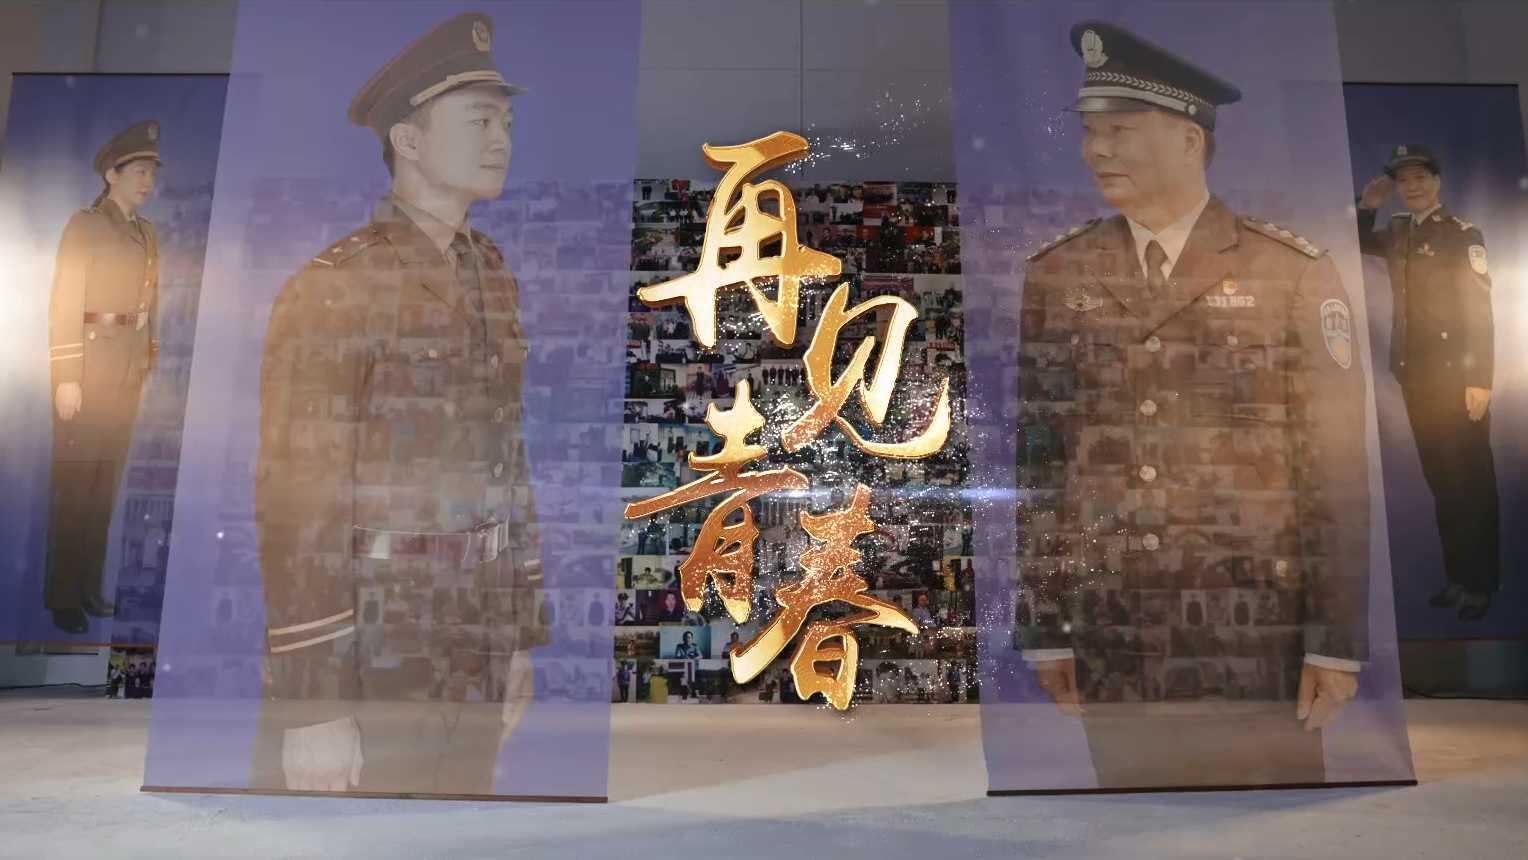 《再见青春修改版》惠城区公安分局 荣休短片 为退休民警致敬